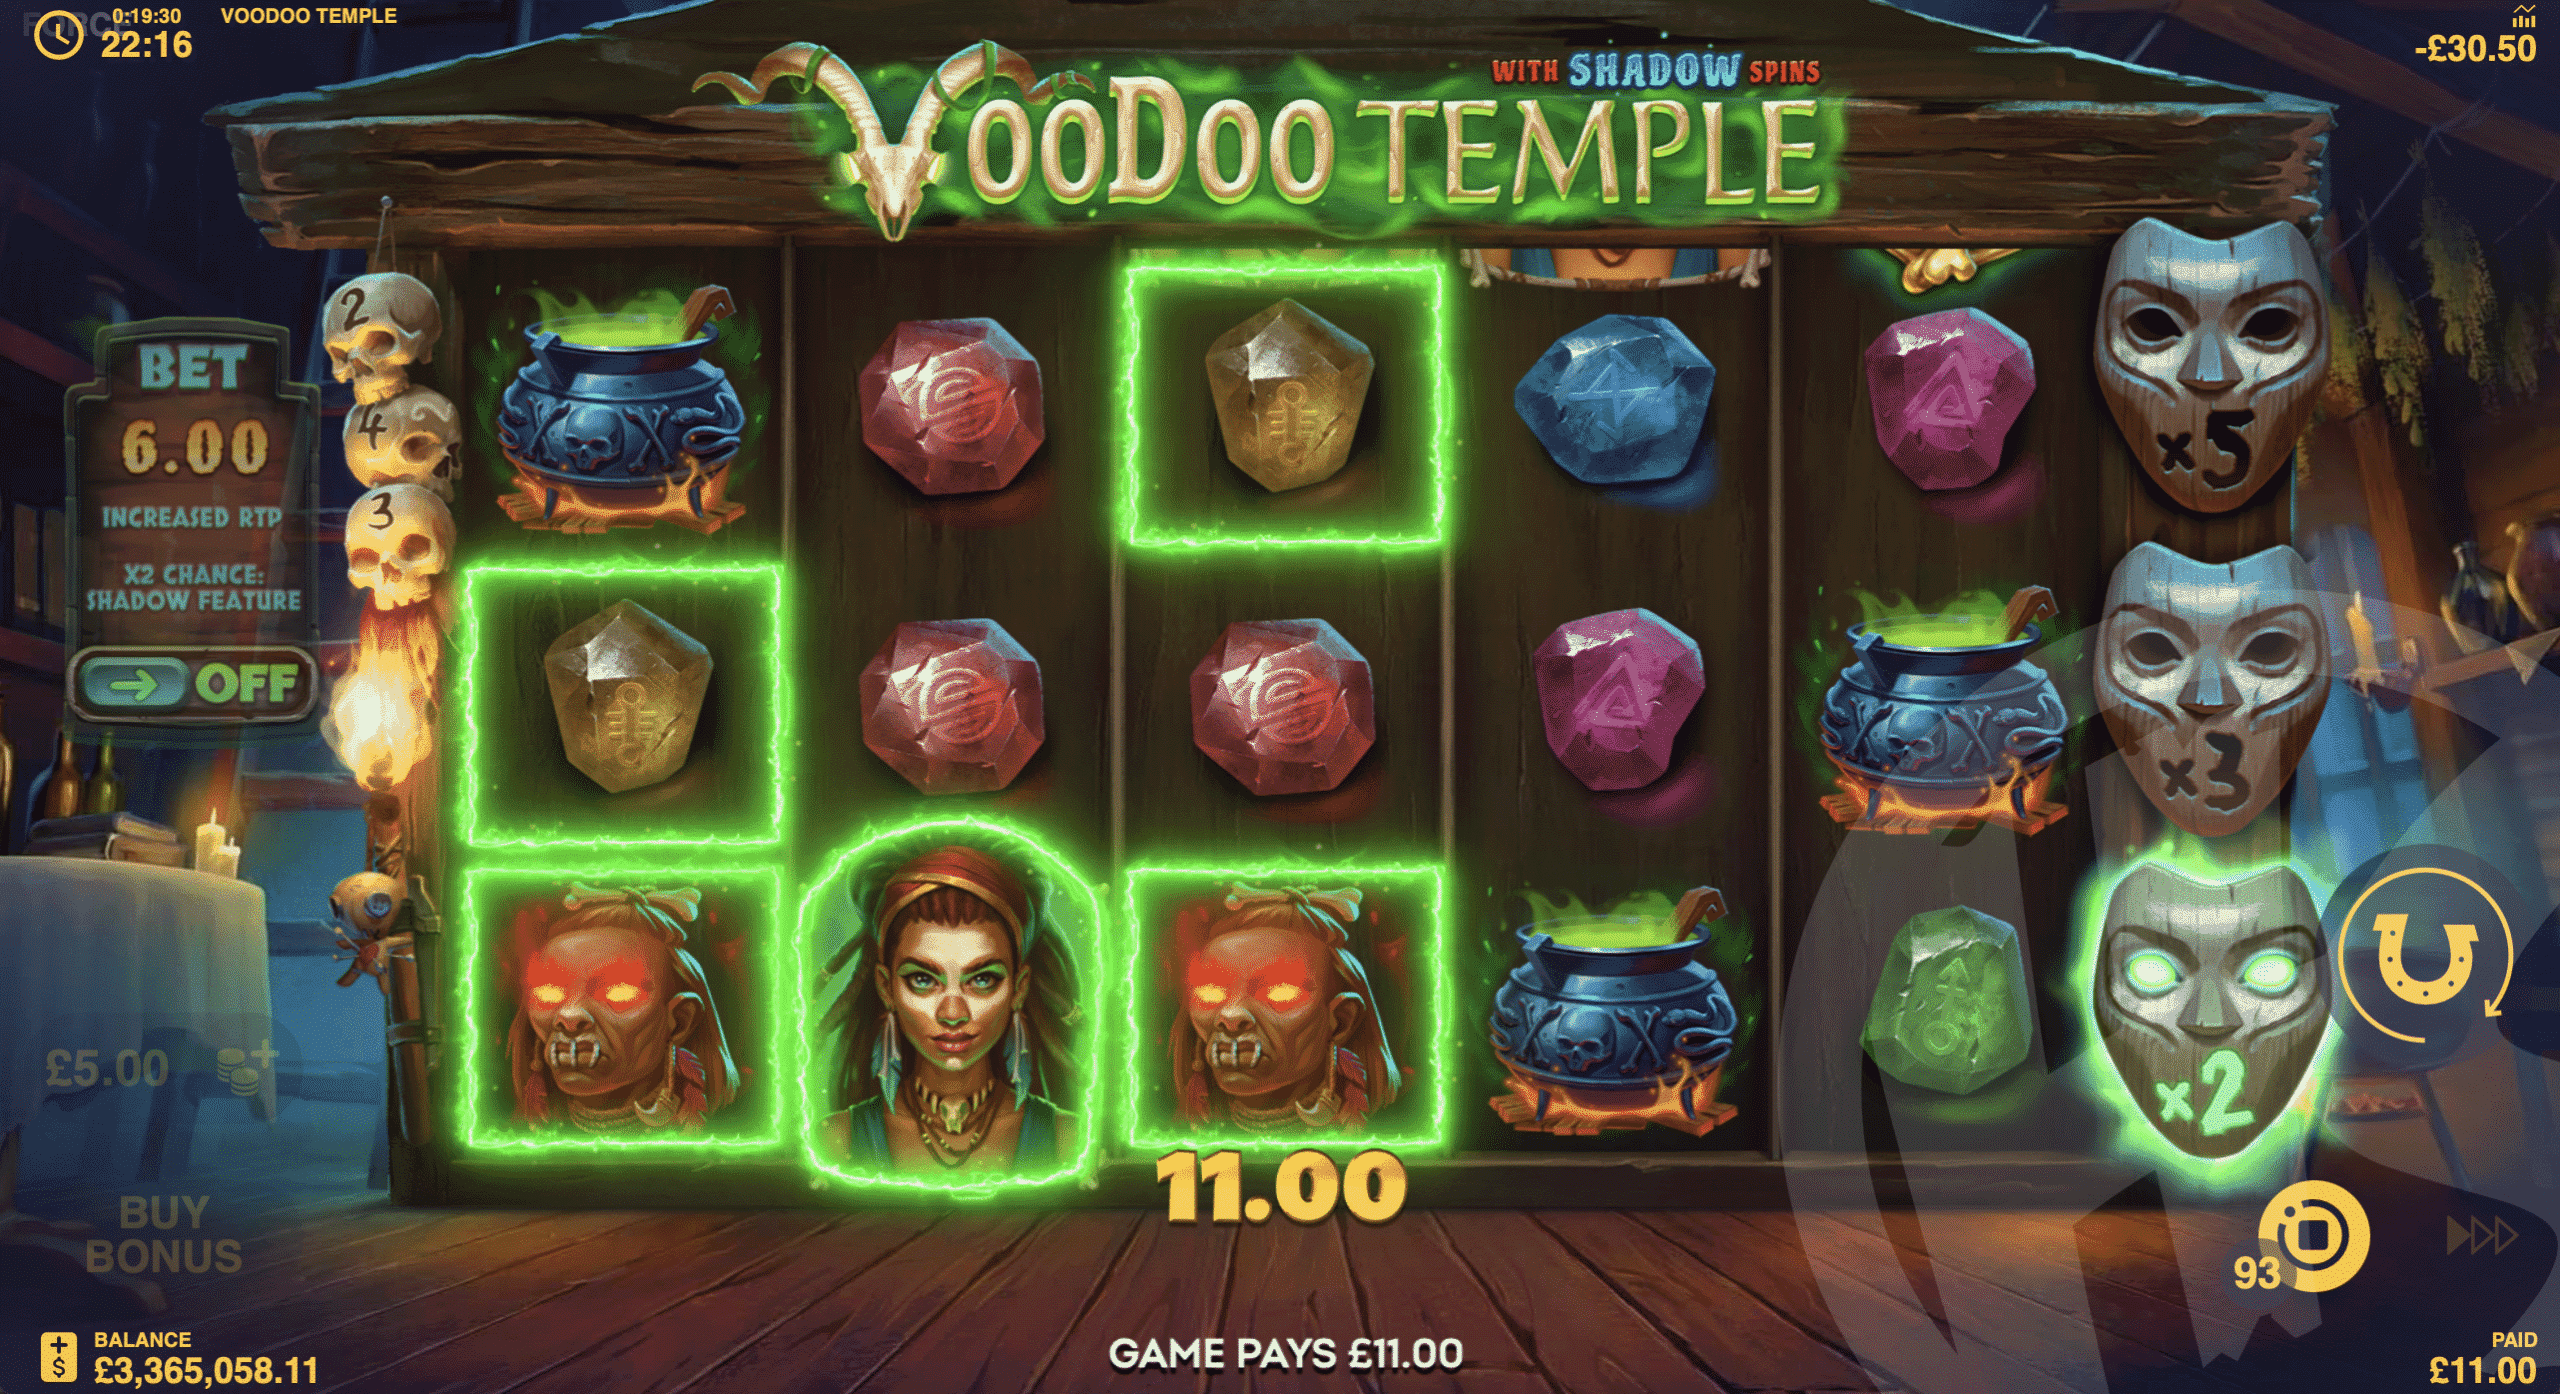 Voodoo Temple Features 243 Ways to Win